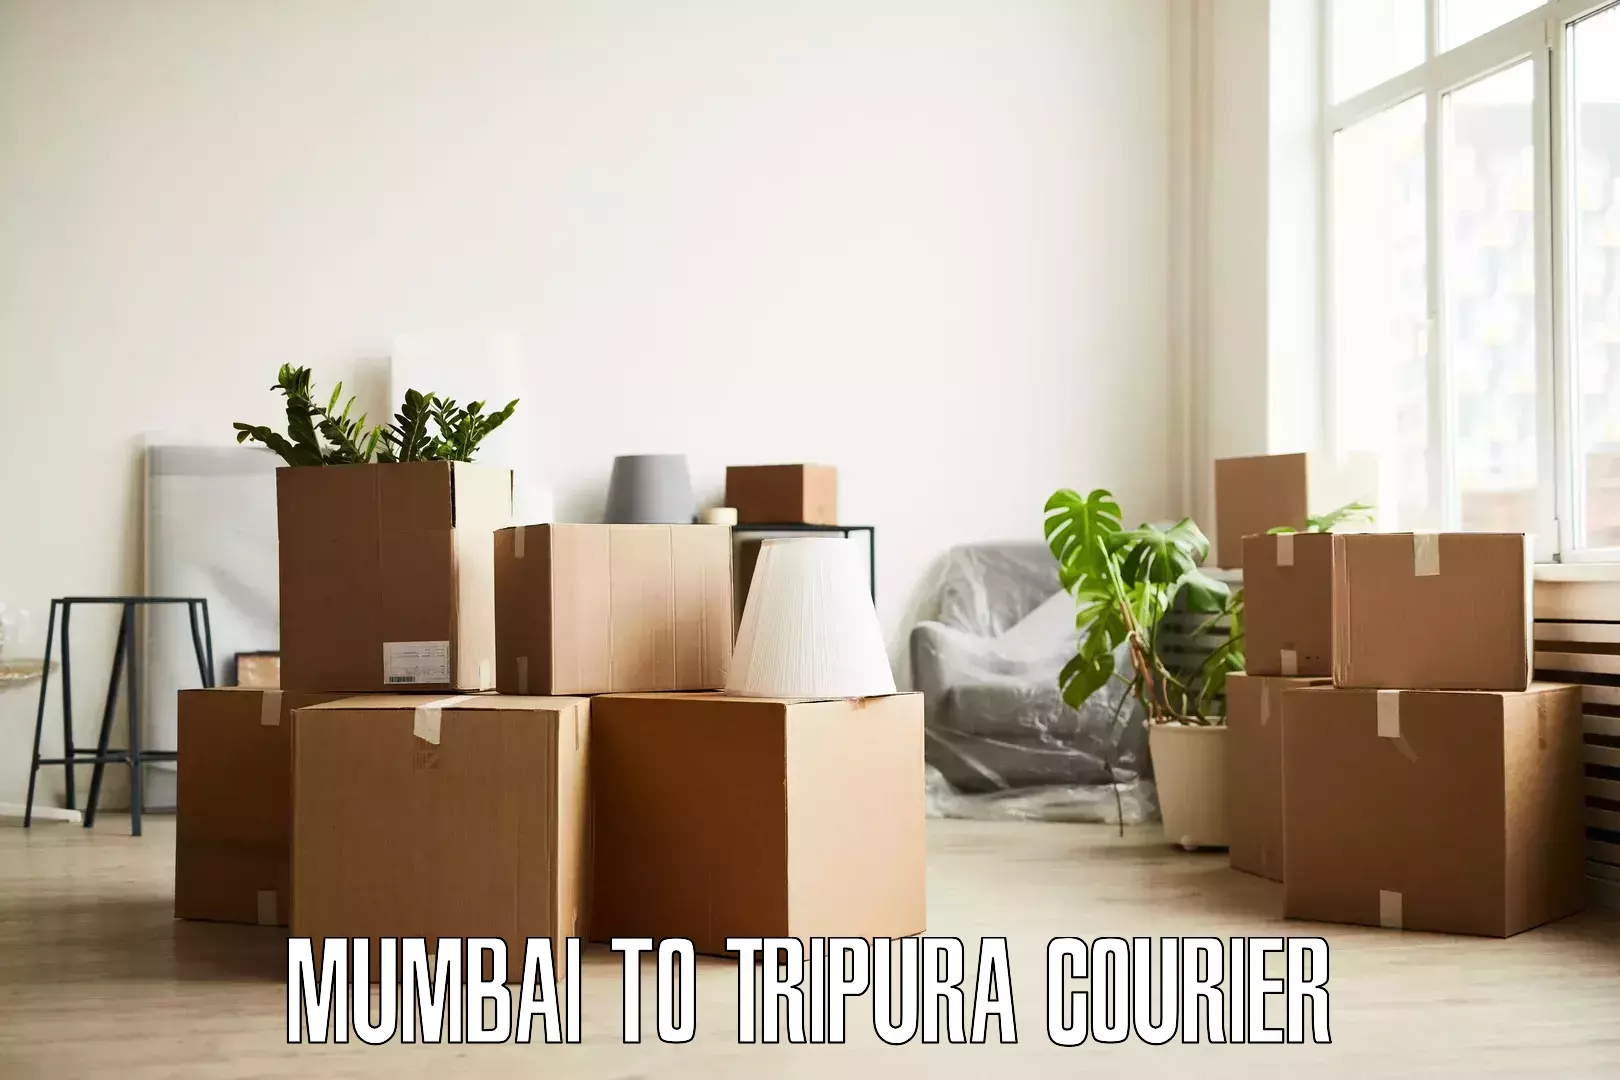 Furniture transport and logistics Mumbai to Santirbazar